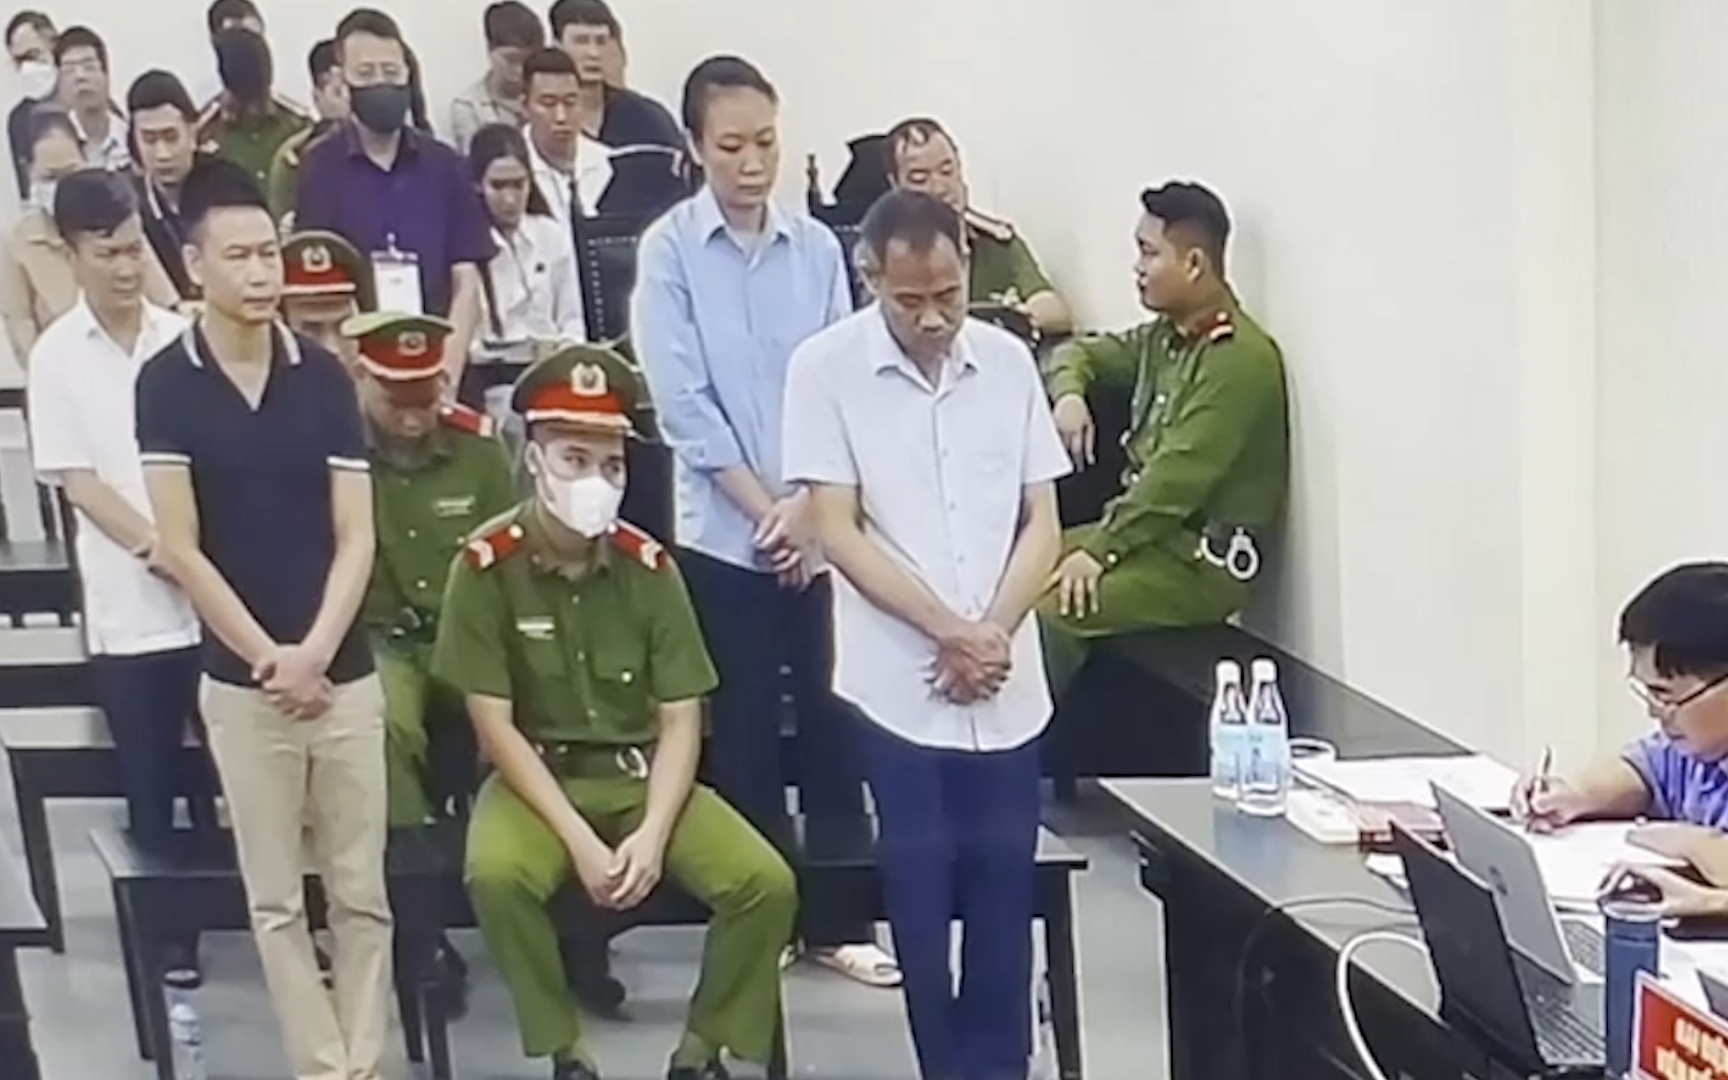 Clip: "Giám đốc trốn nợ" ngã khuỵu khi bị đề nghị mức án 8-9 năm tù trong vụ liên quan ông Nguyễn Đức Chung